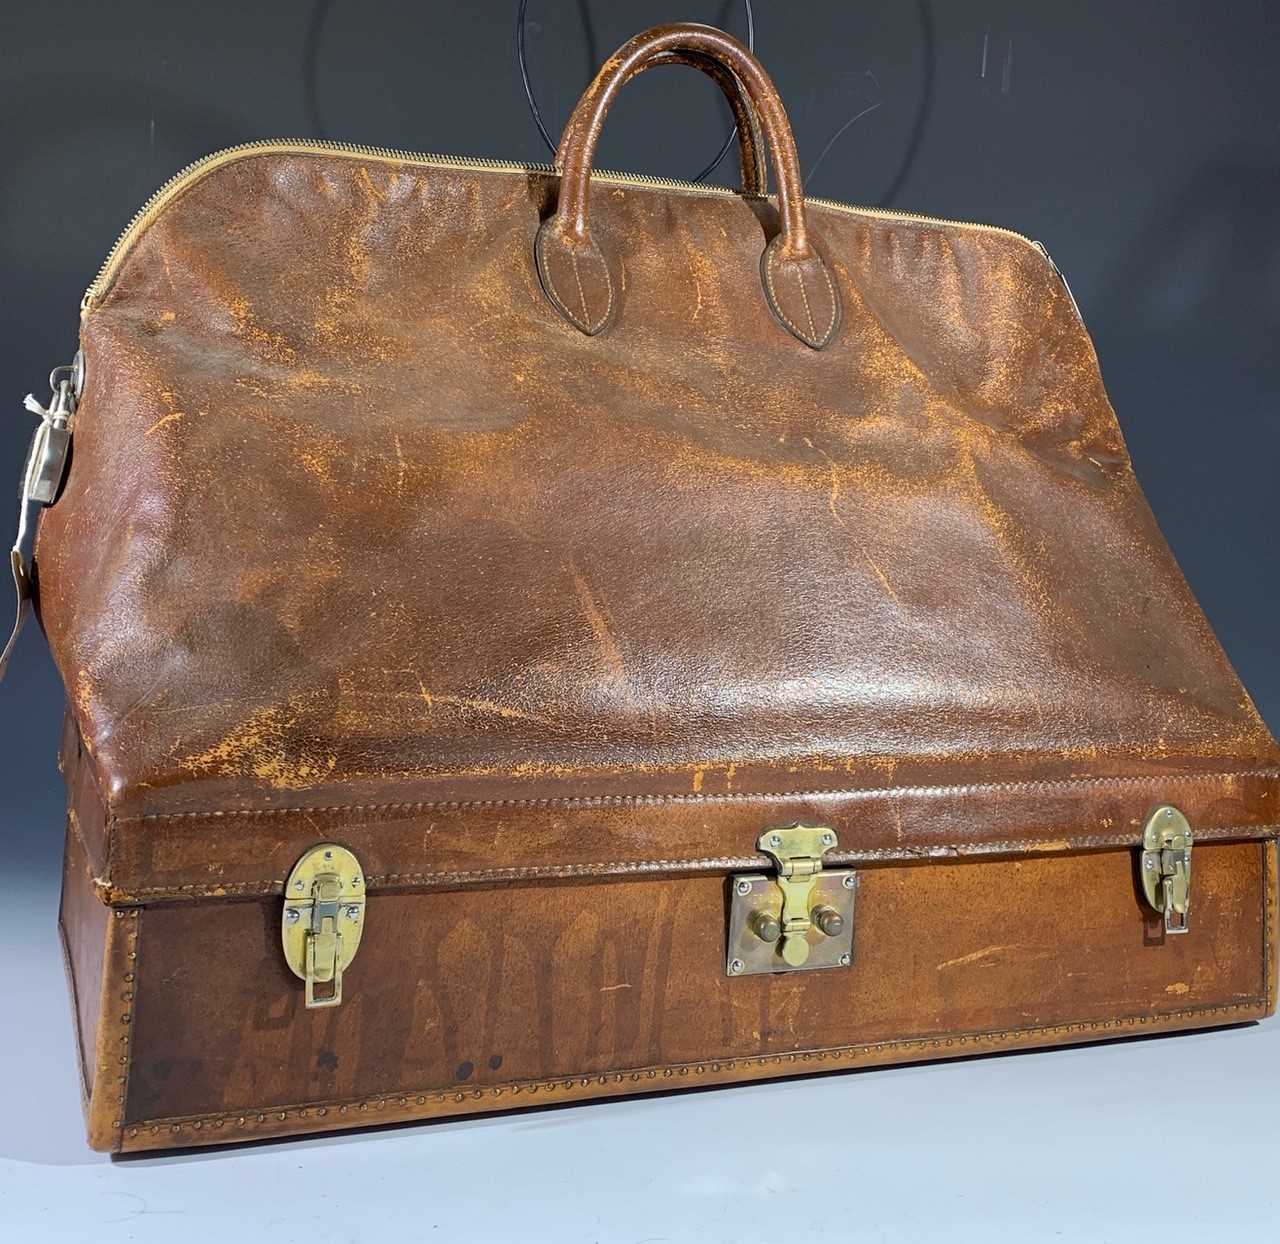 Vintage Hermes Mallette bag handbag brown